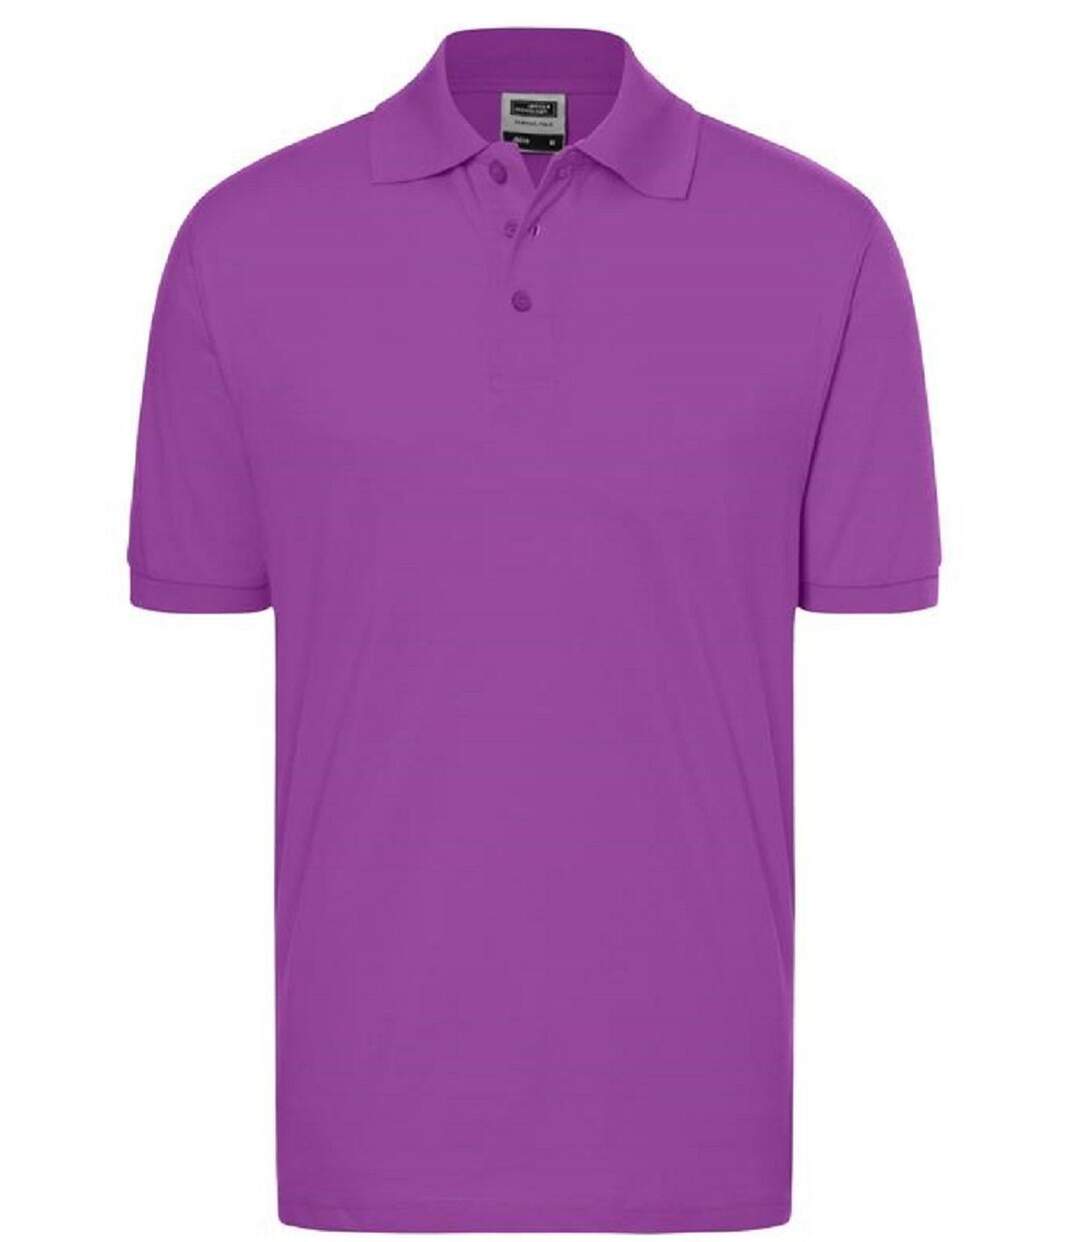 Polo manches courtes - Homme - JN070C - violet pourpre